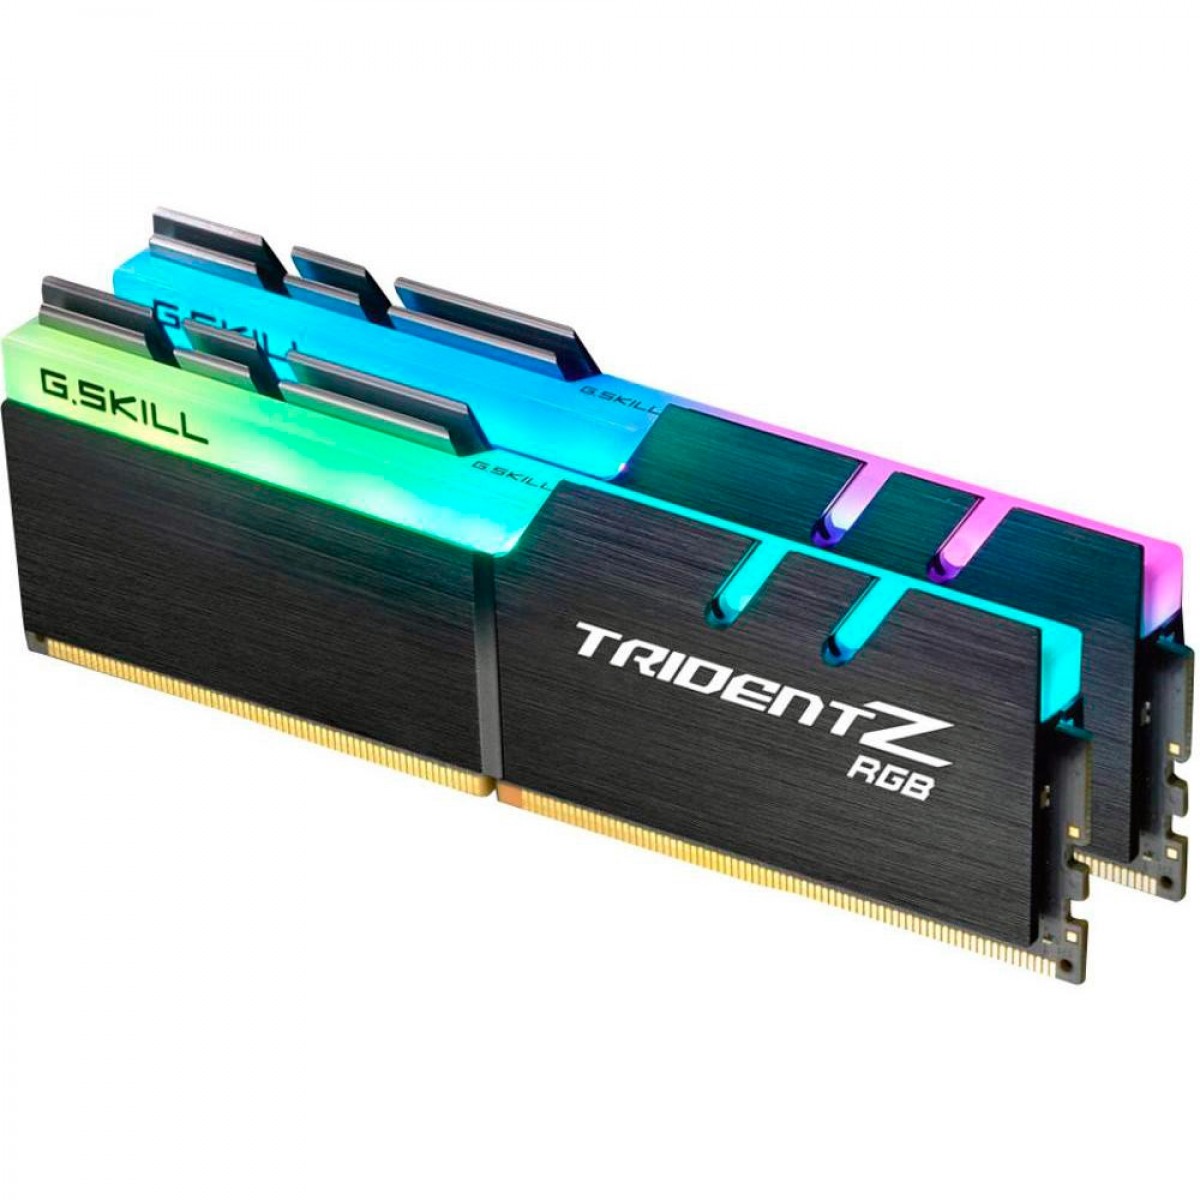 Memória DDR4 G.Skill Trident Z RGB, 16GB (2x8GB) 2400MHz, F4-2400C15D-16GTZR